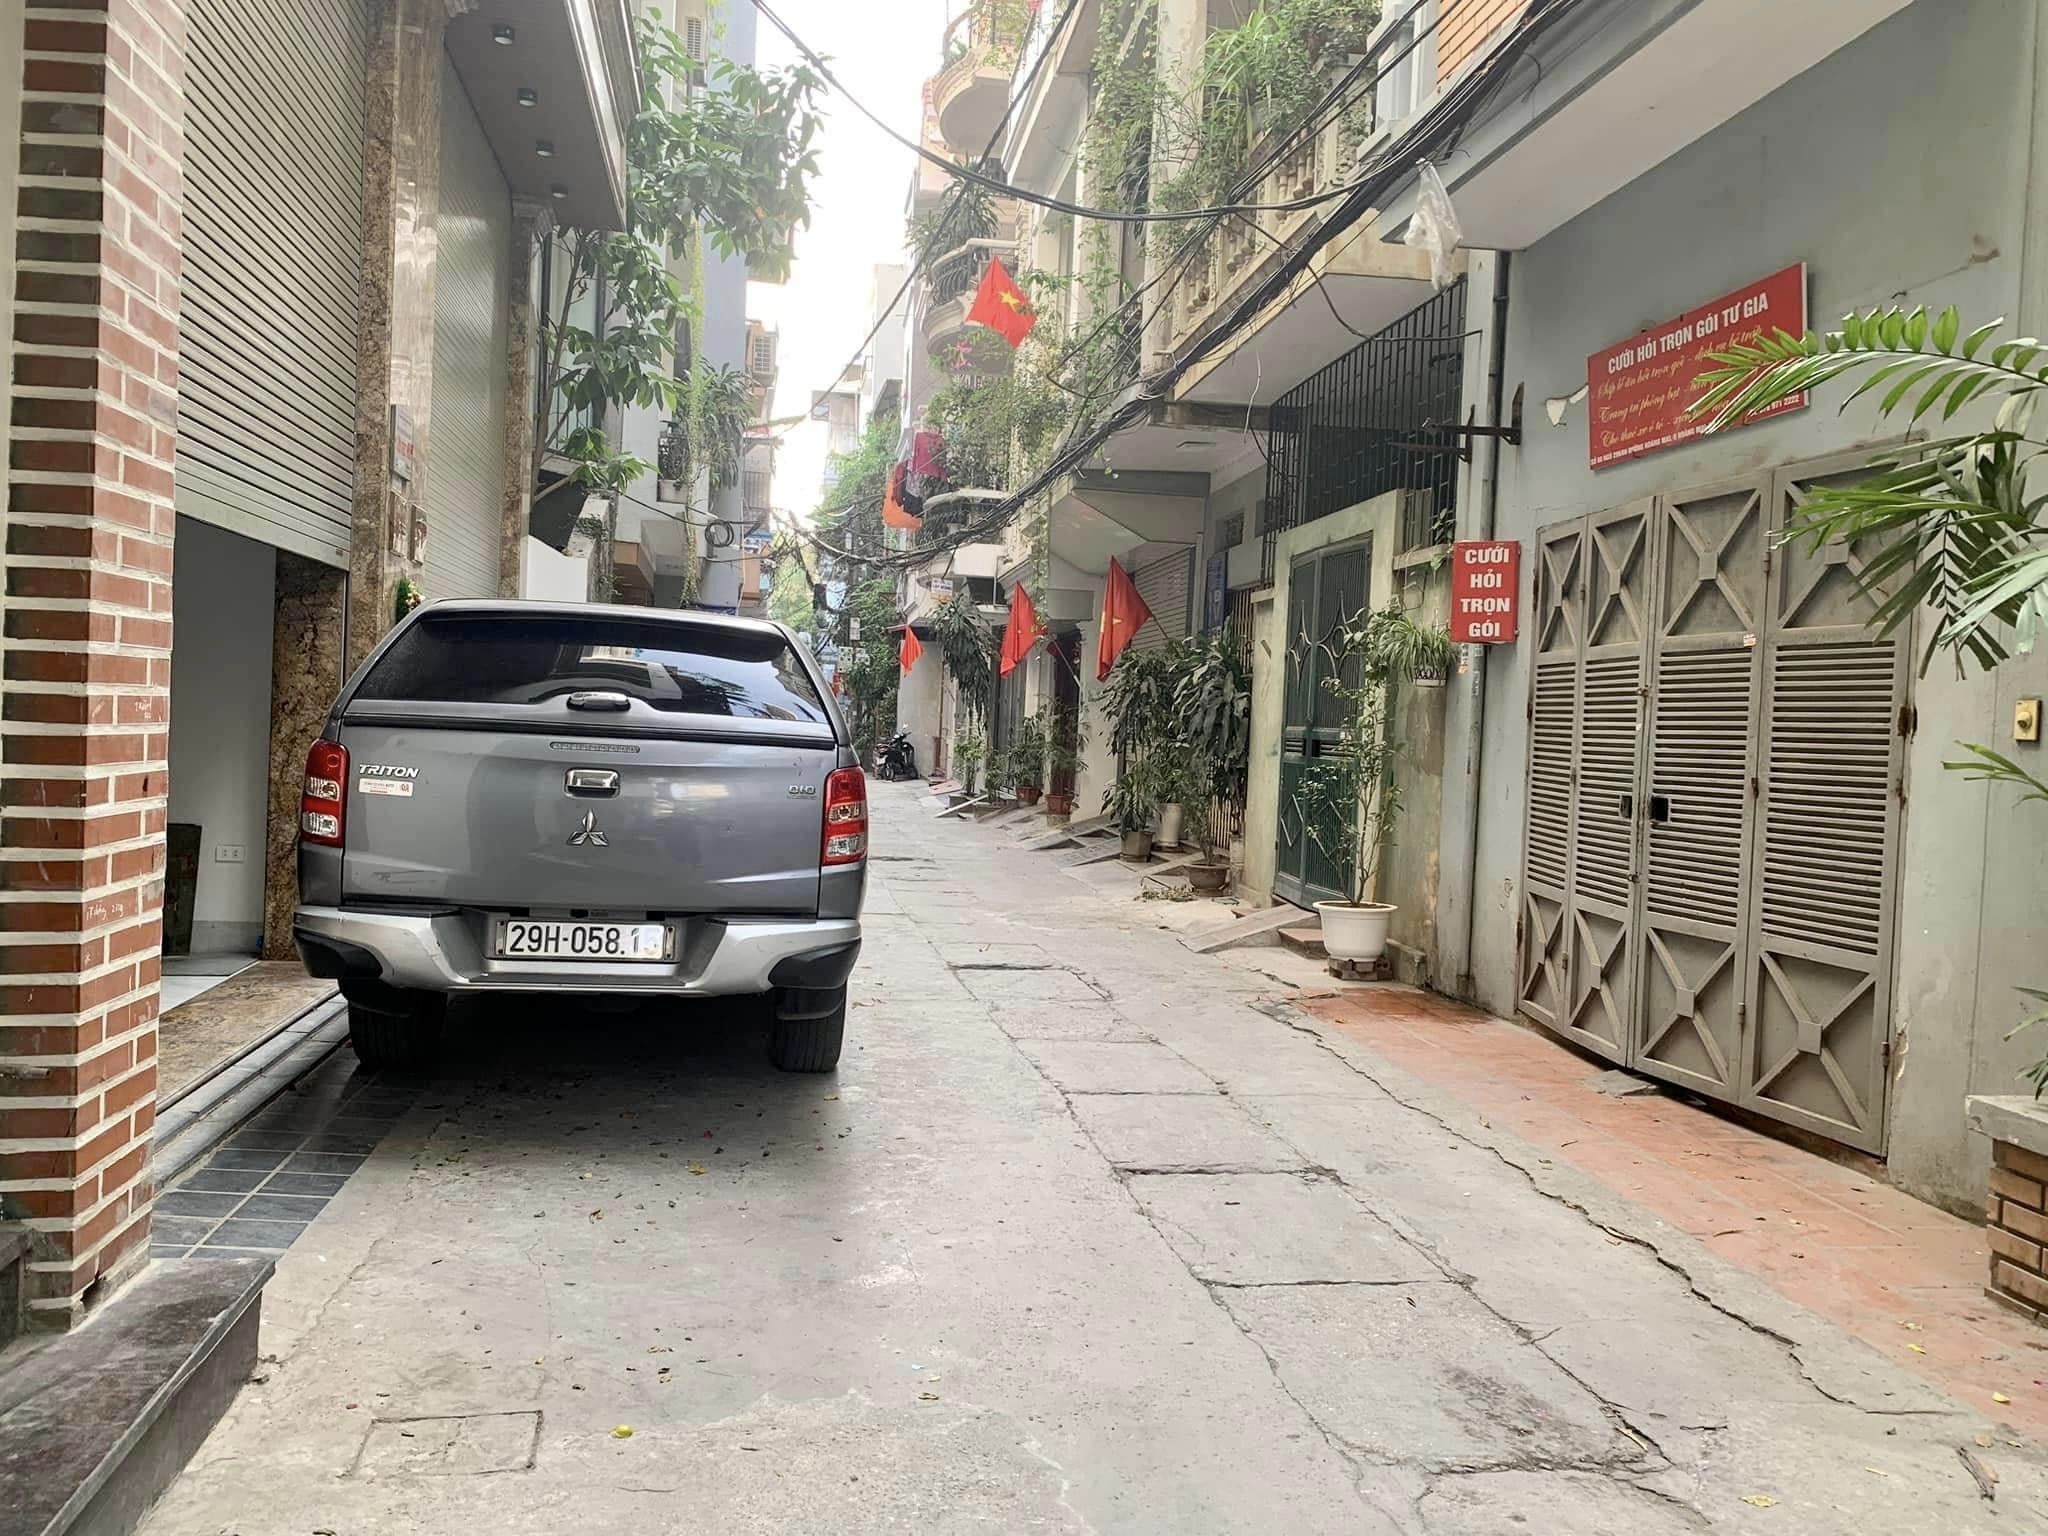 Bán nhà Giang Văn Minh, Ba Đình, dt 65m, ô tô đỗ cửa, vài bước ra mặt phố. Giá 10 tỷ - Ảnh 1